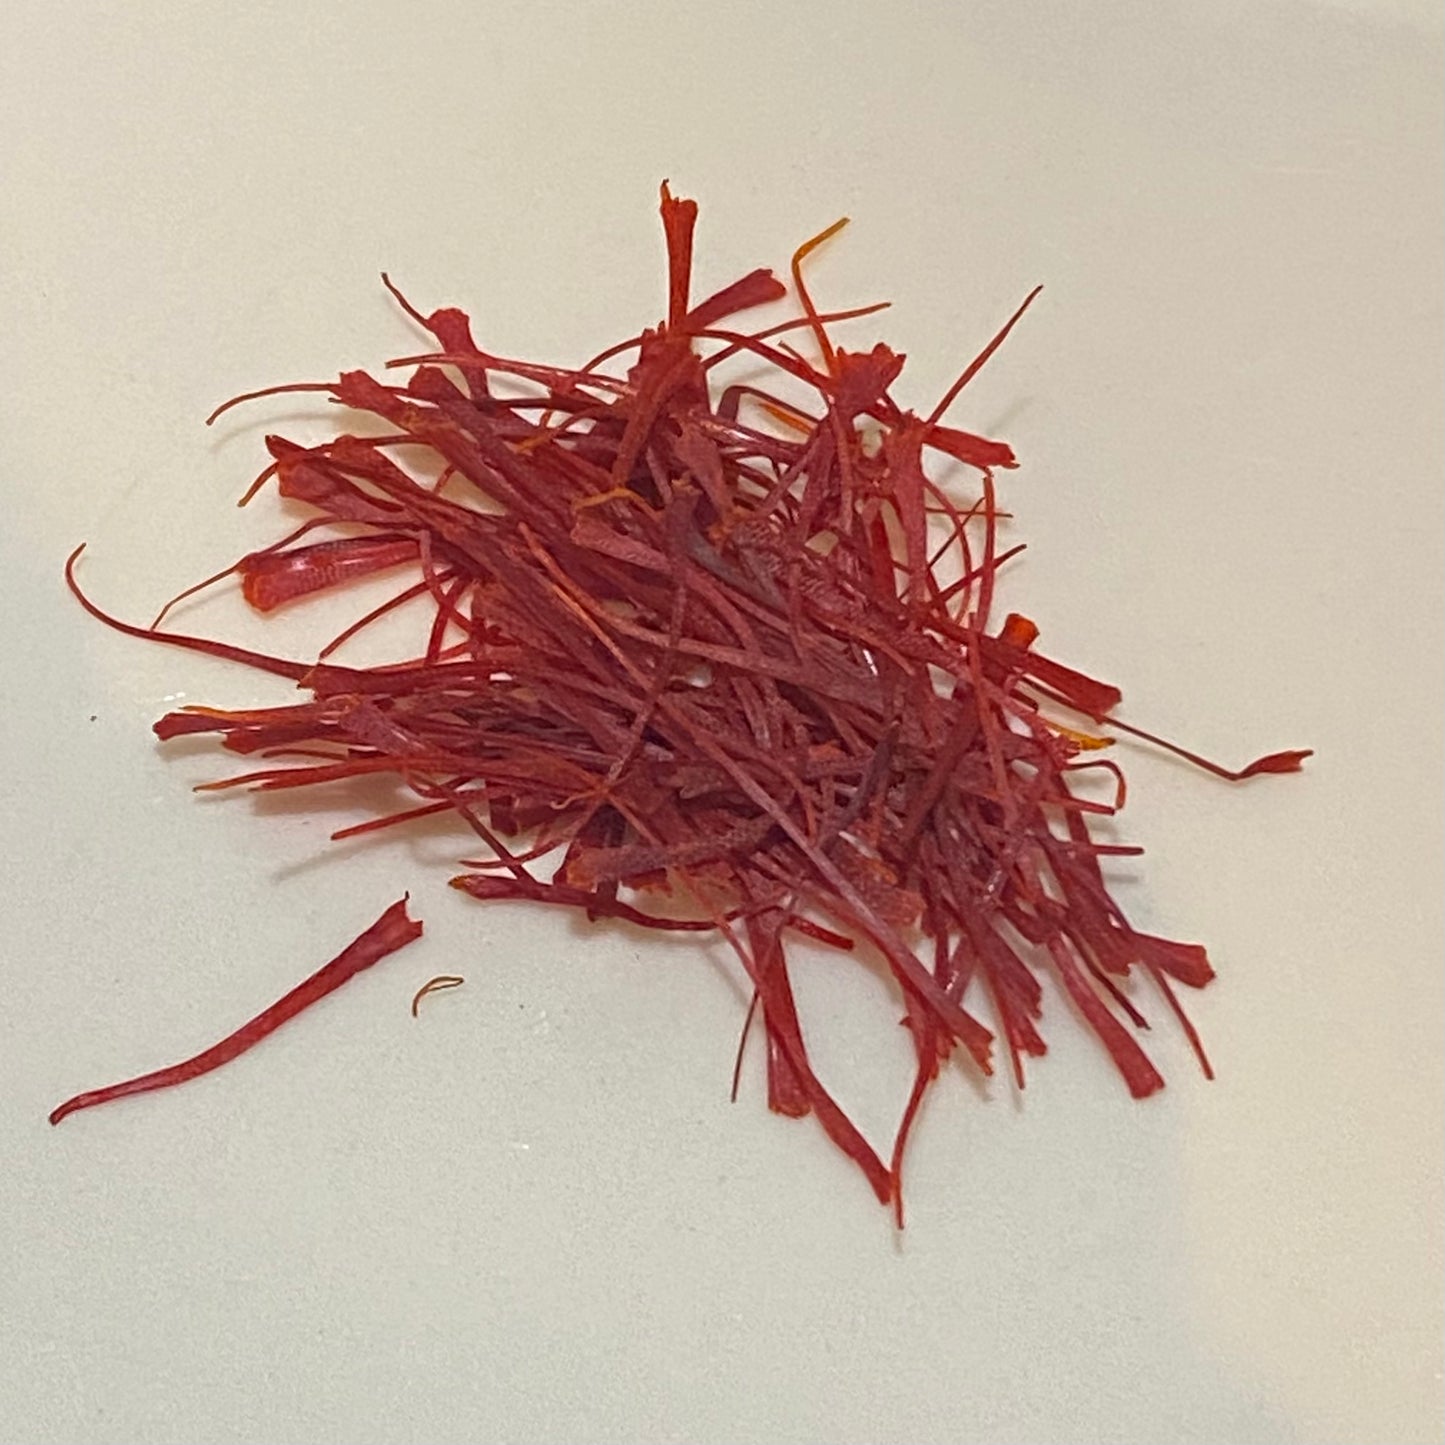 Royal Red Saffron Threads